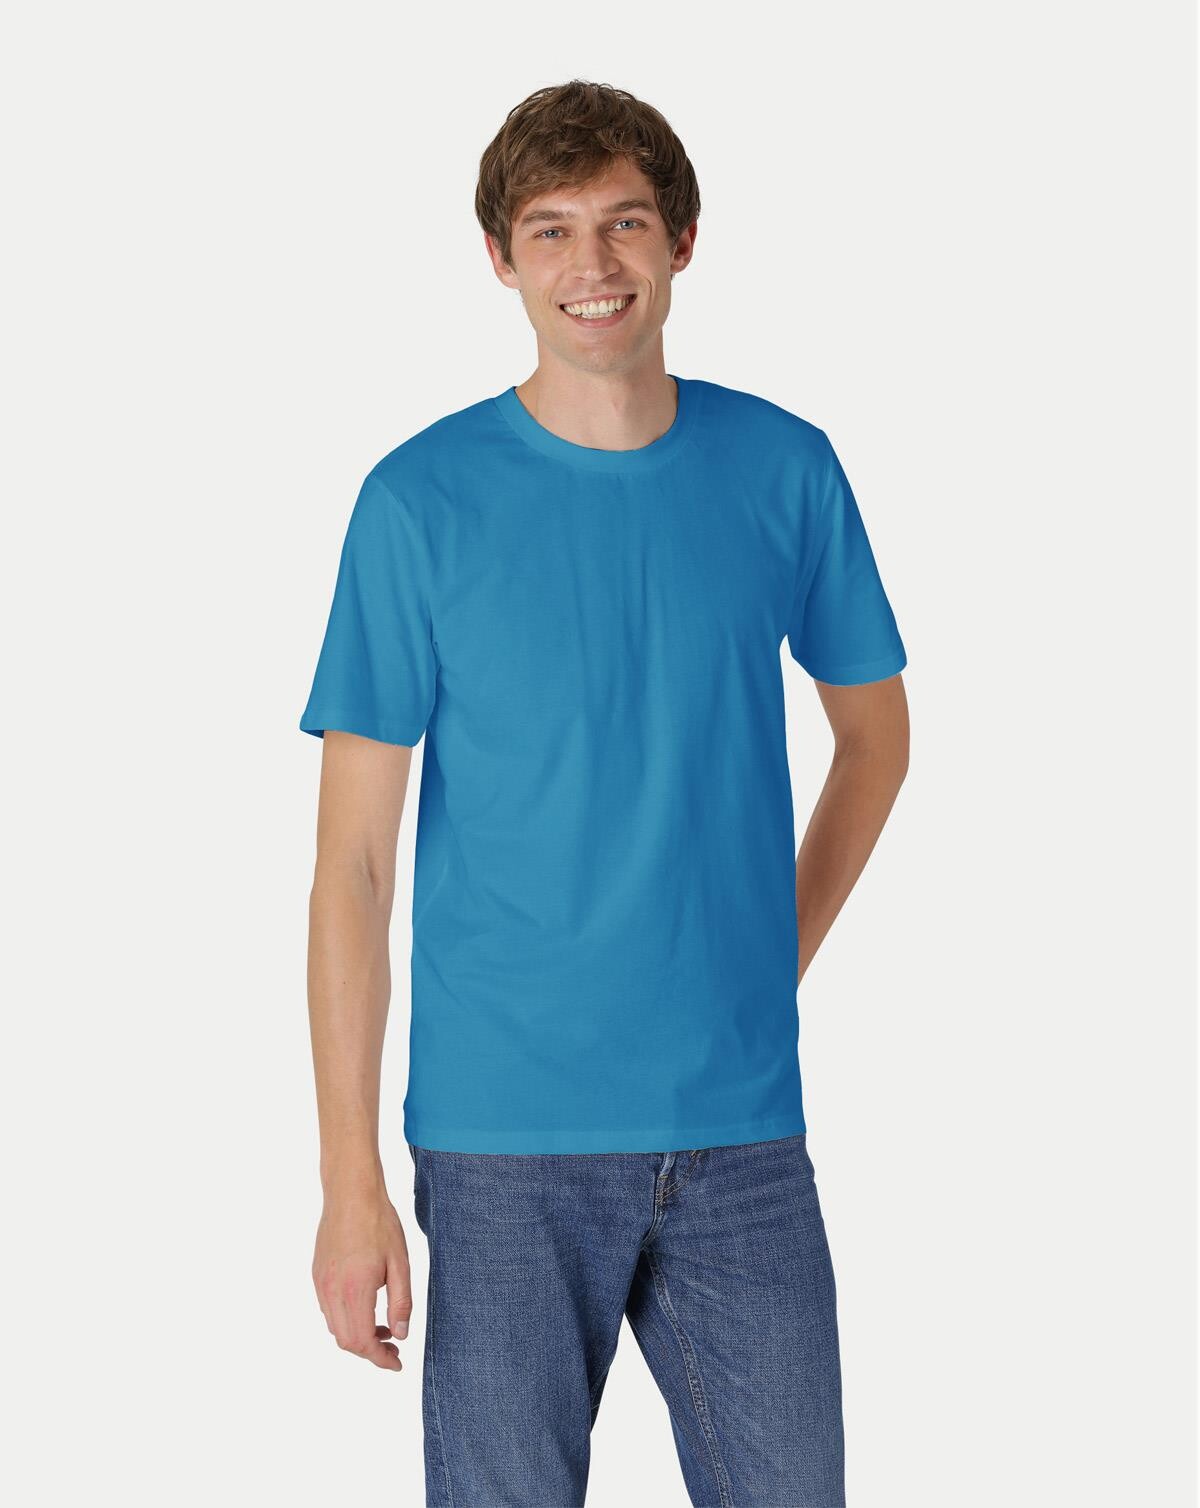 Neutral Organic - Unisex Regular T-shirt (Safir, L)